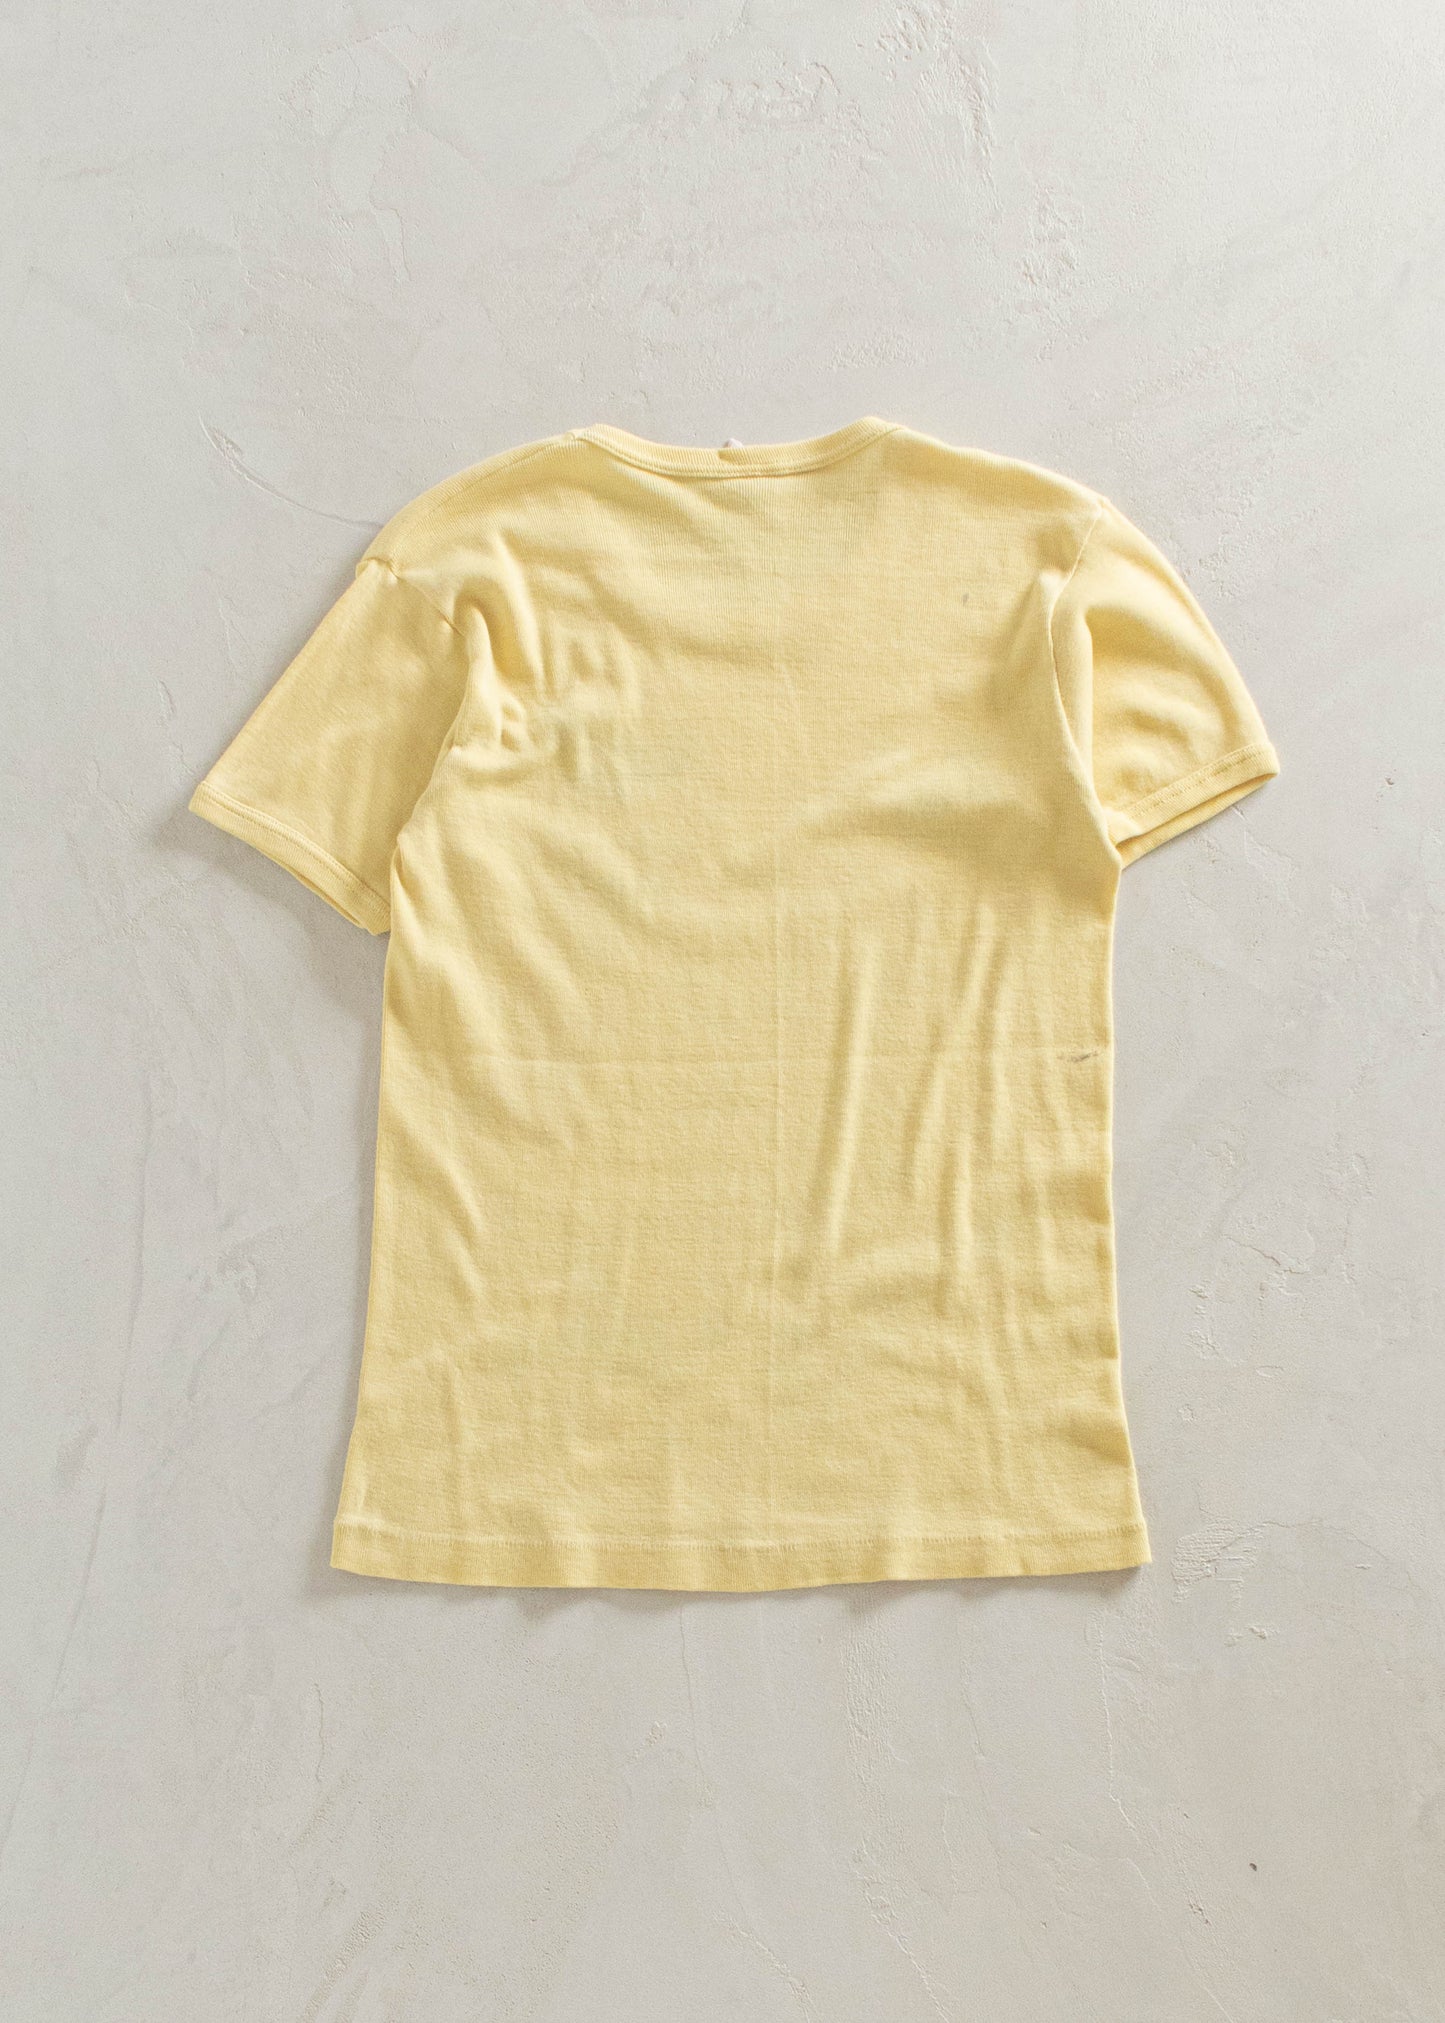 1980s Key West Is For The Birds Souvenir T-Shirt Size 2XS/XS